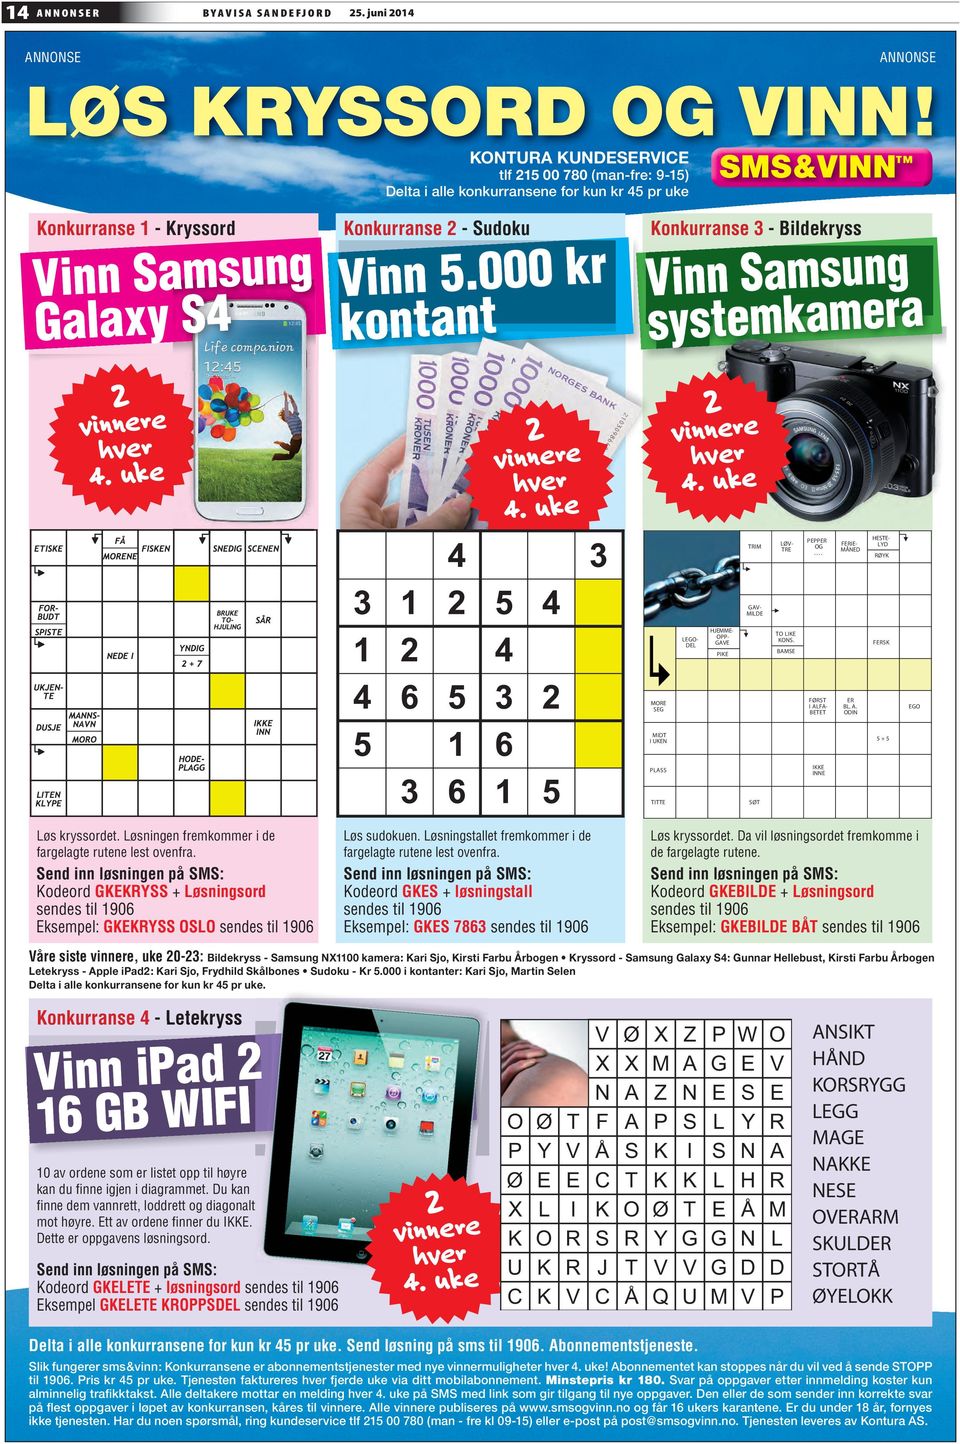 000 kr kontant Konkurranse 3 - Bildekryss Vinn Samsung systemkamera 2 vinnere hver 4. uke 2 vinnere hver 4. uke 2 vinnere hver 4. uke TRIM LØV- TRE PEPPER OG.